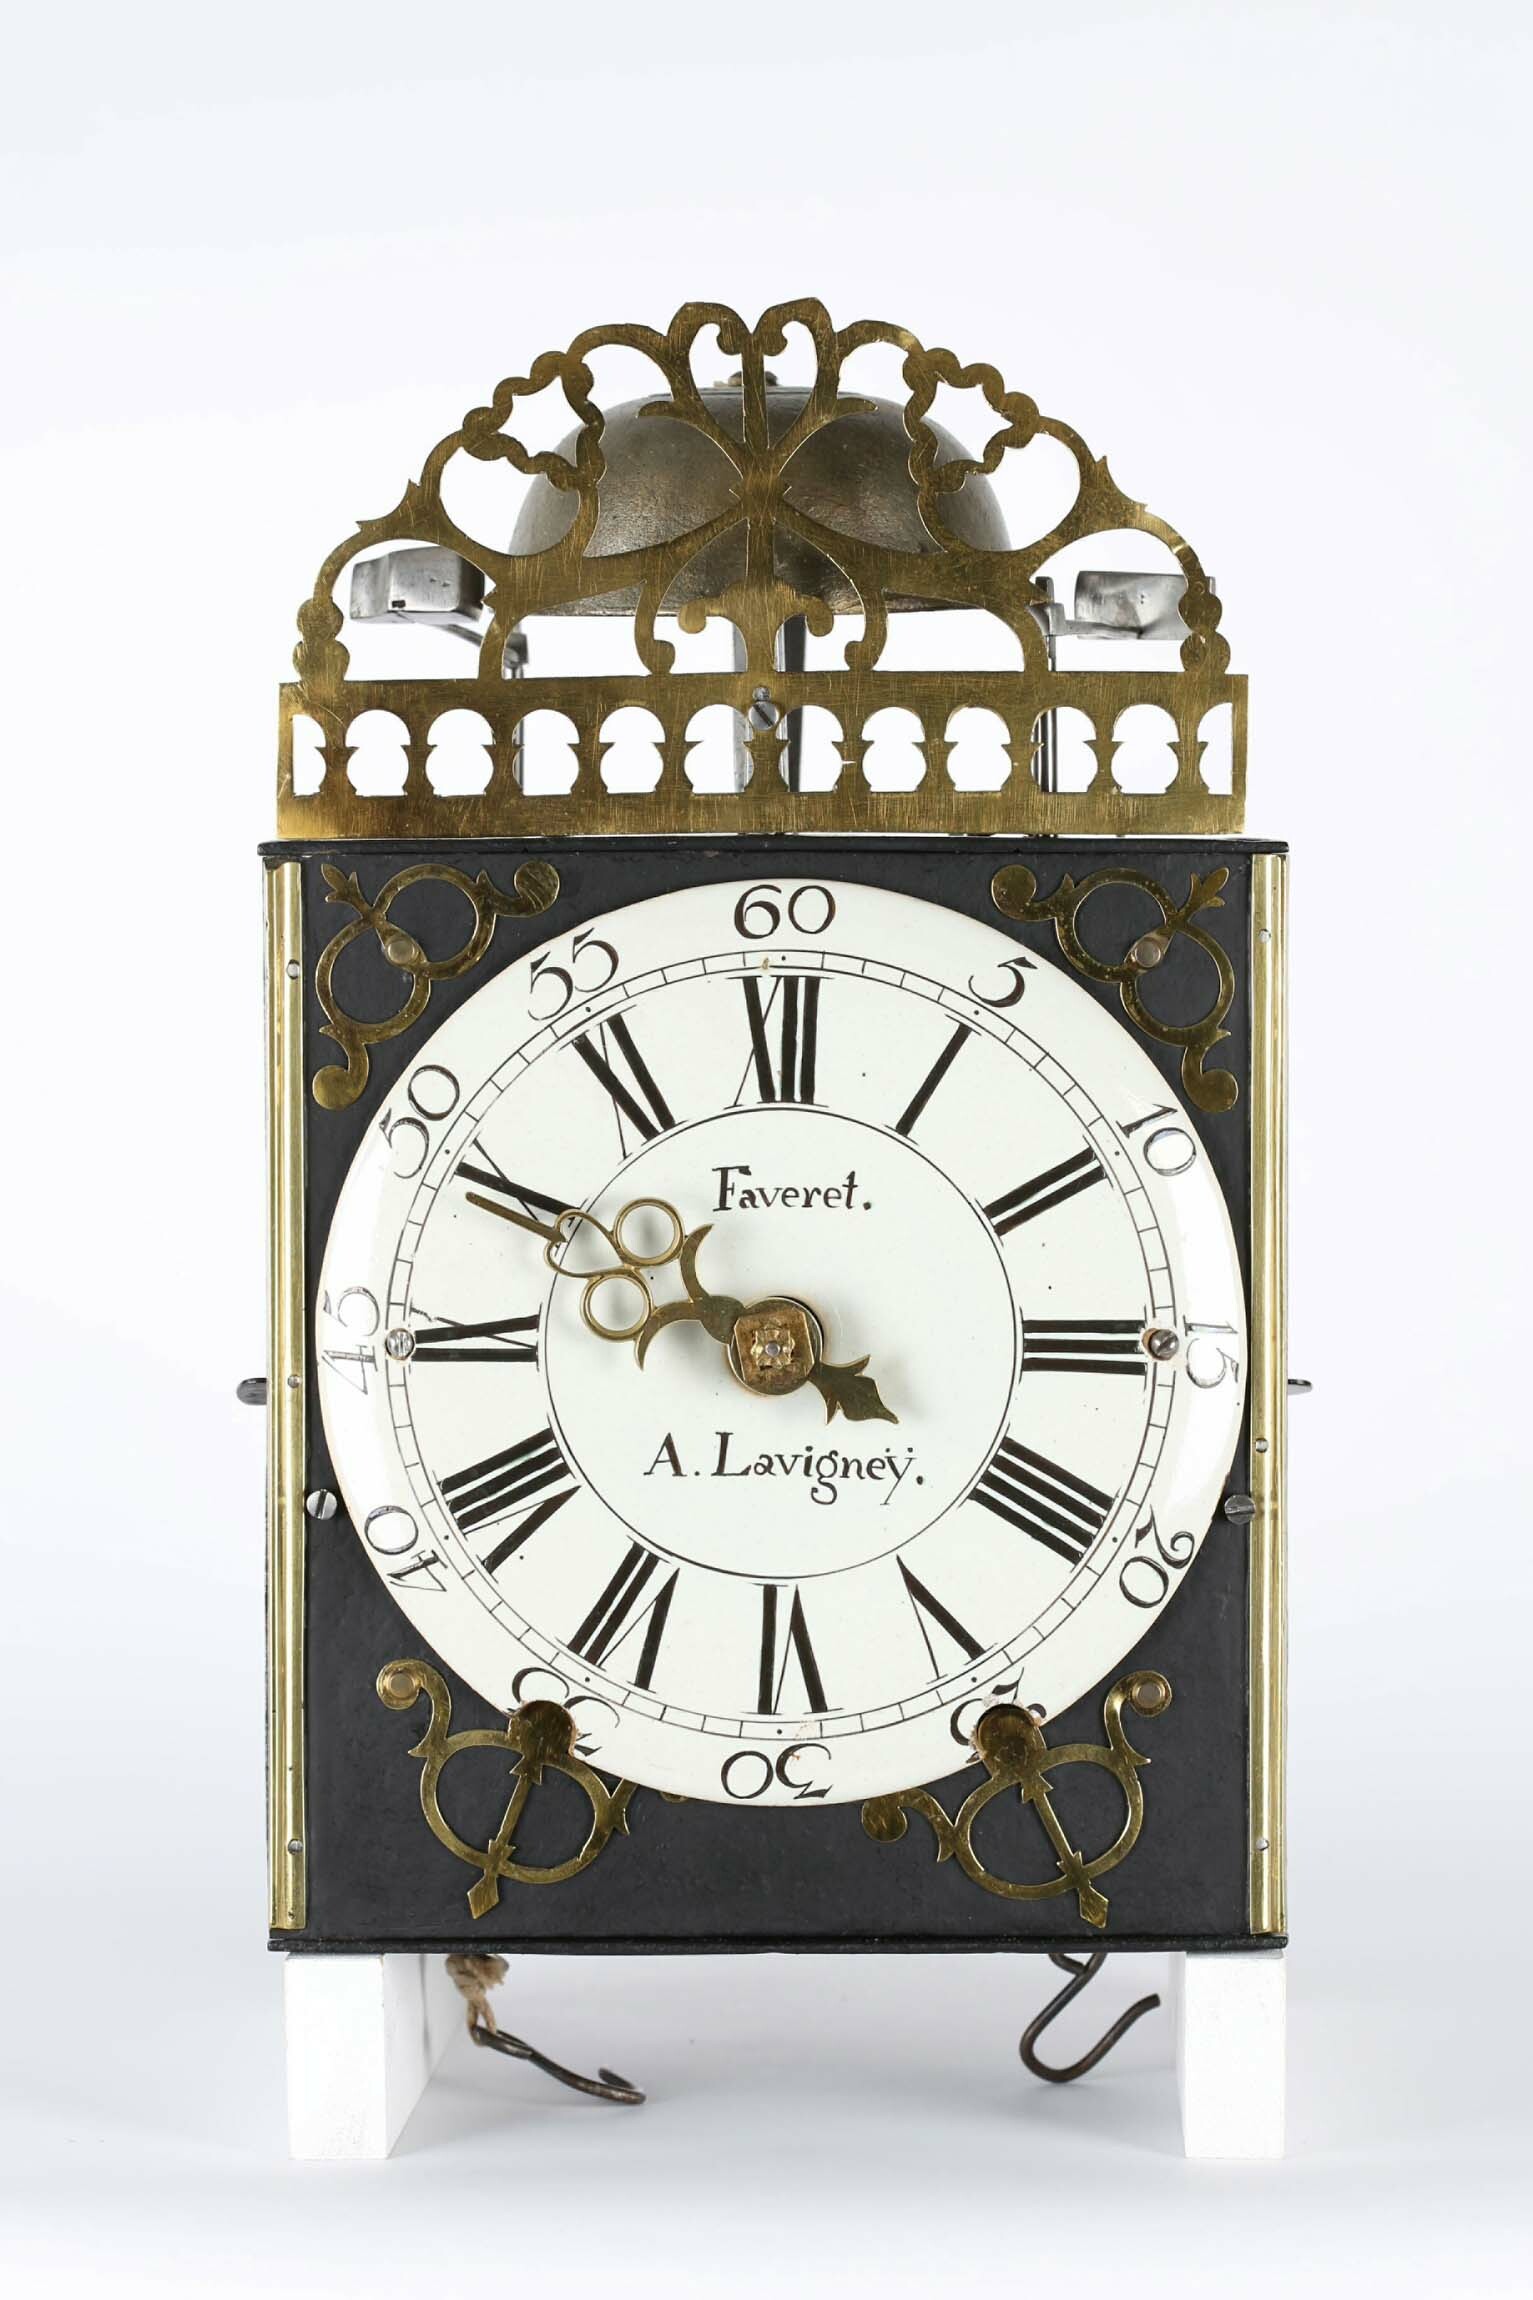 Comtoiseuhr, Faveret, Lavigney (Haute-Saône), um 1740 (Deutsches Uhrenmuseum CC BY-SA)